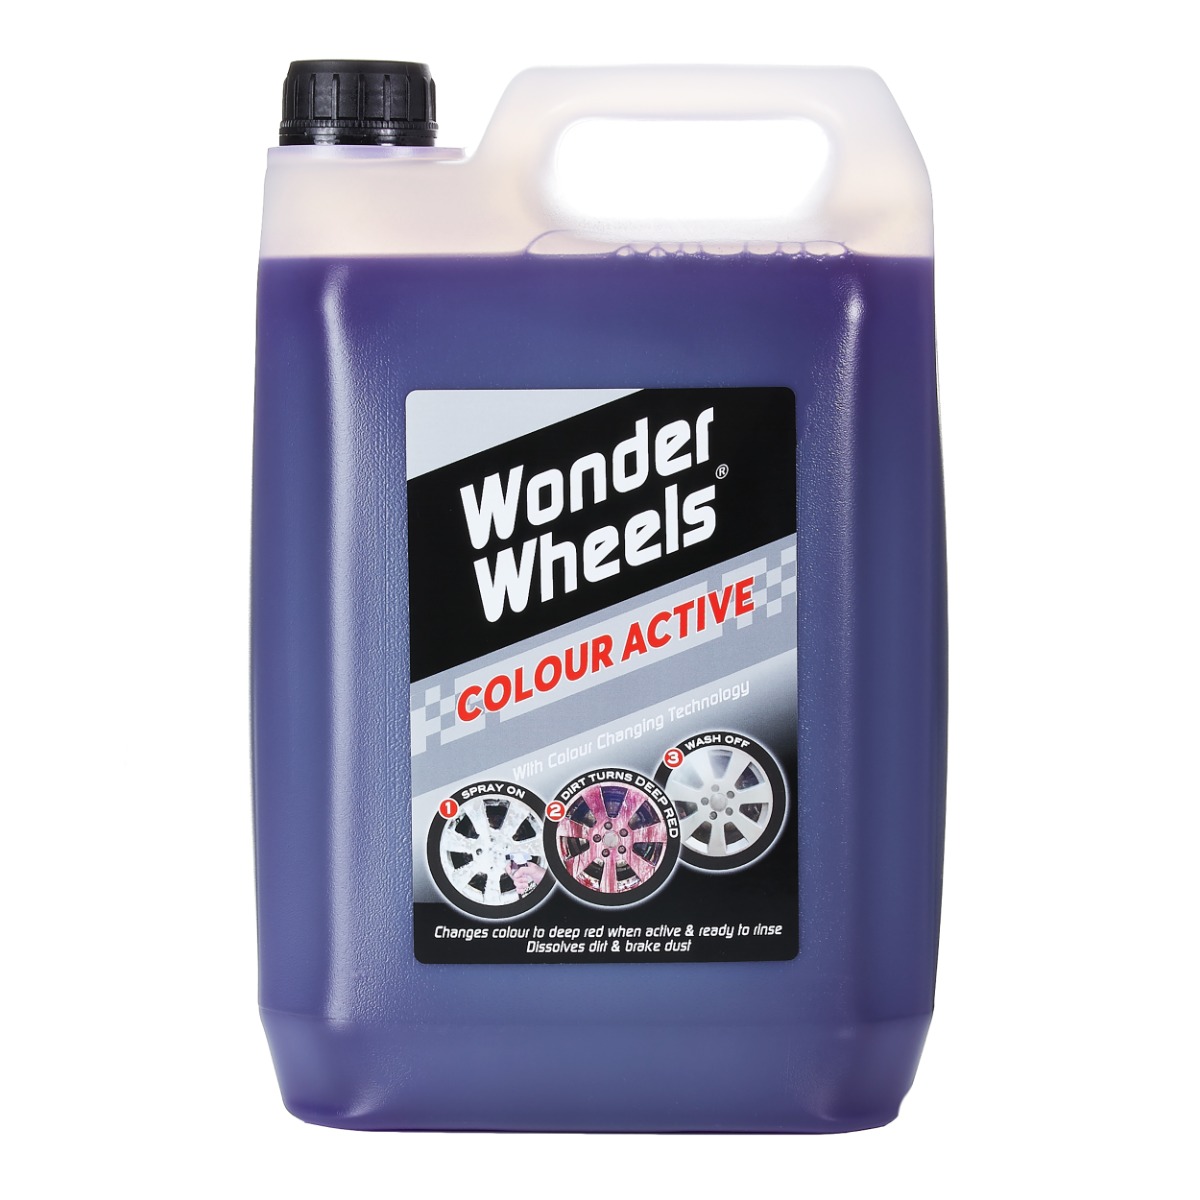 Wonder Wheels Original Wheel Cleaner